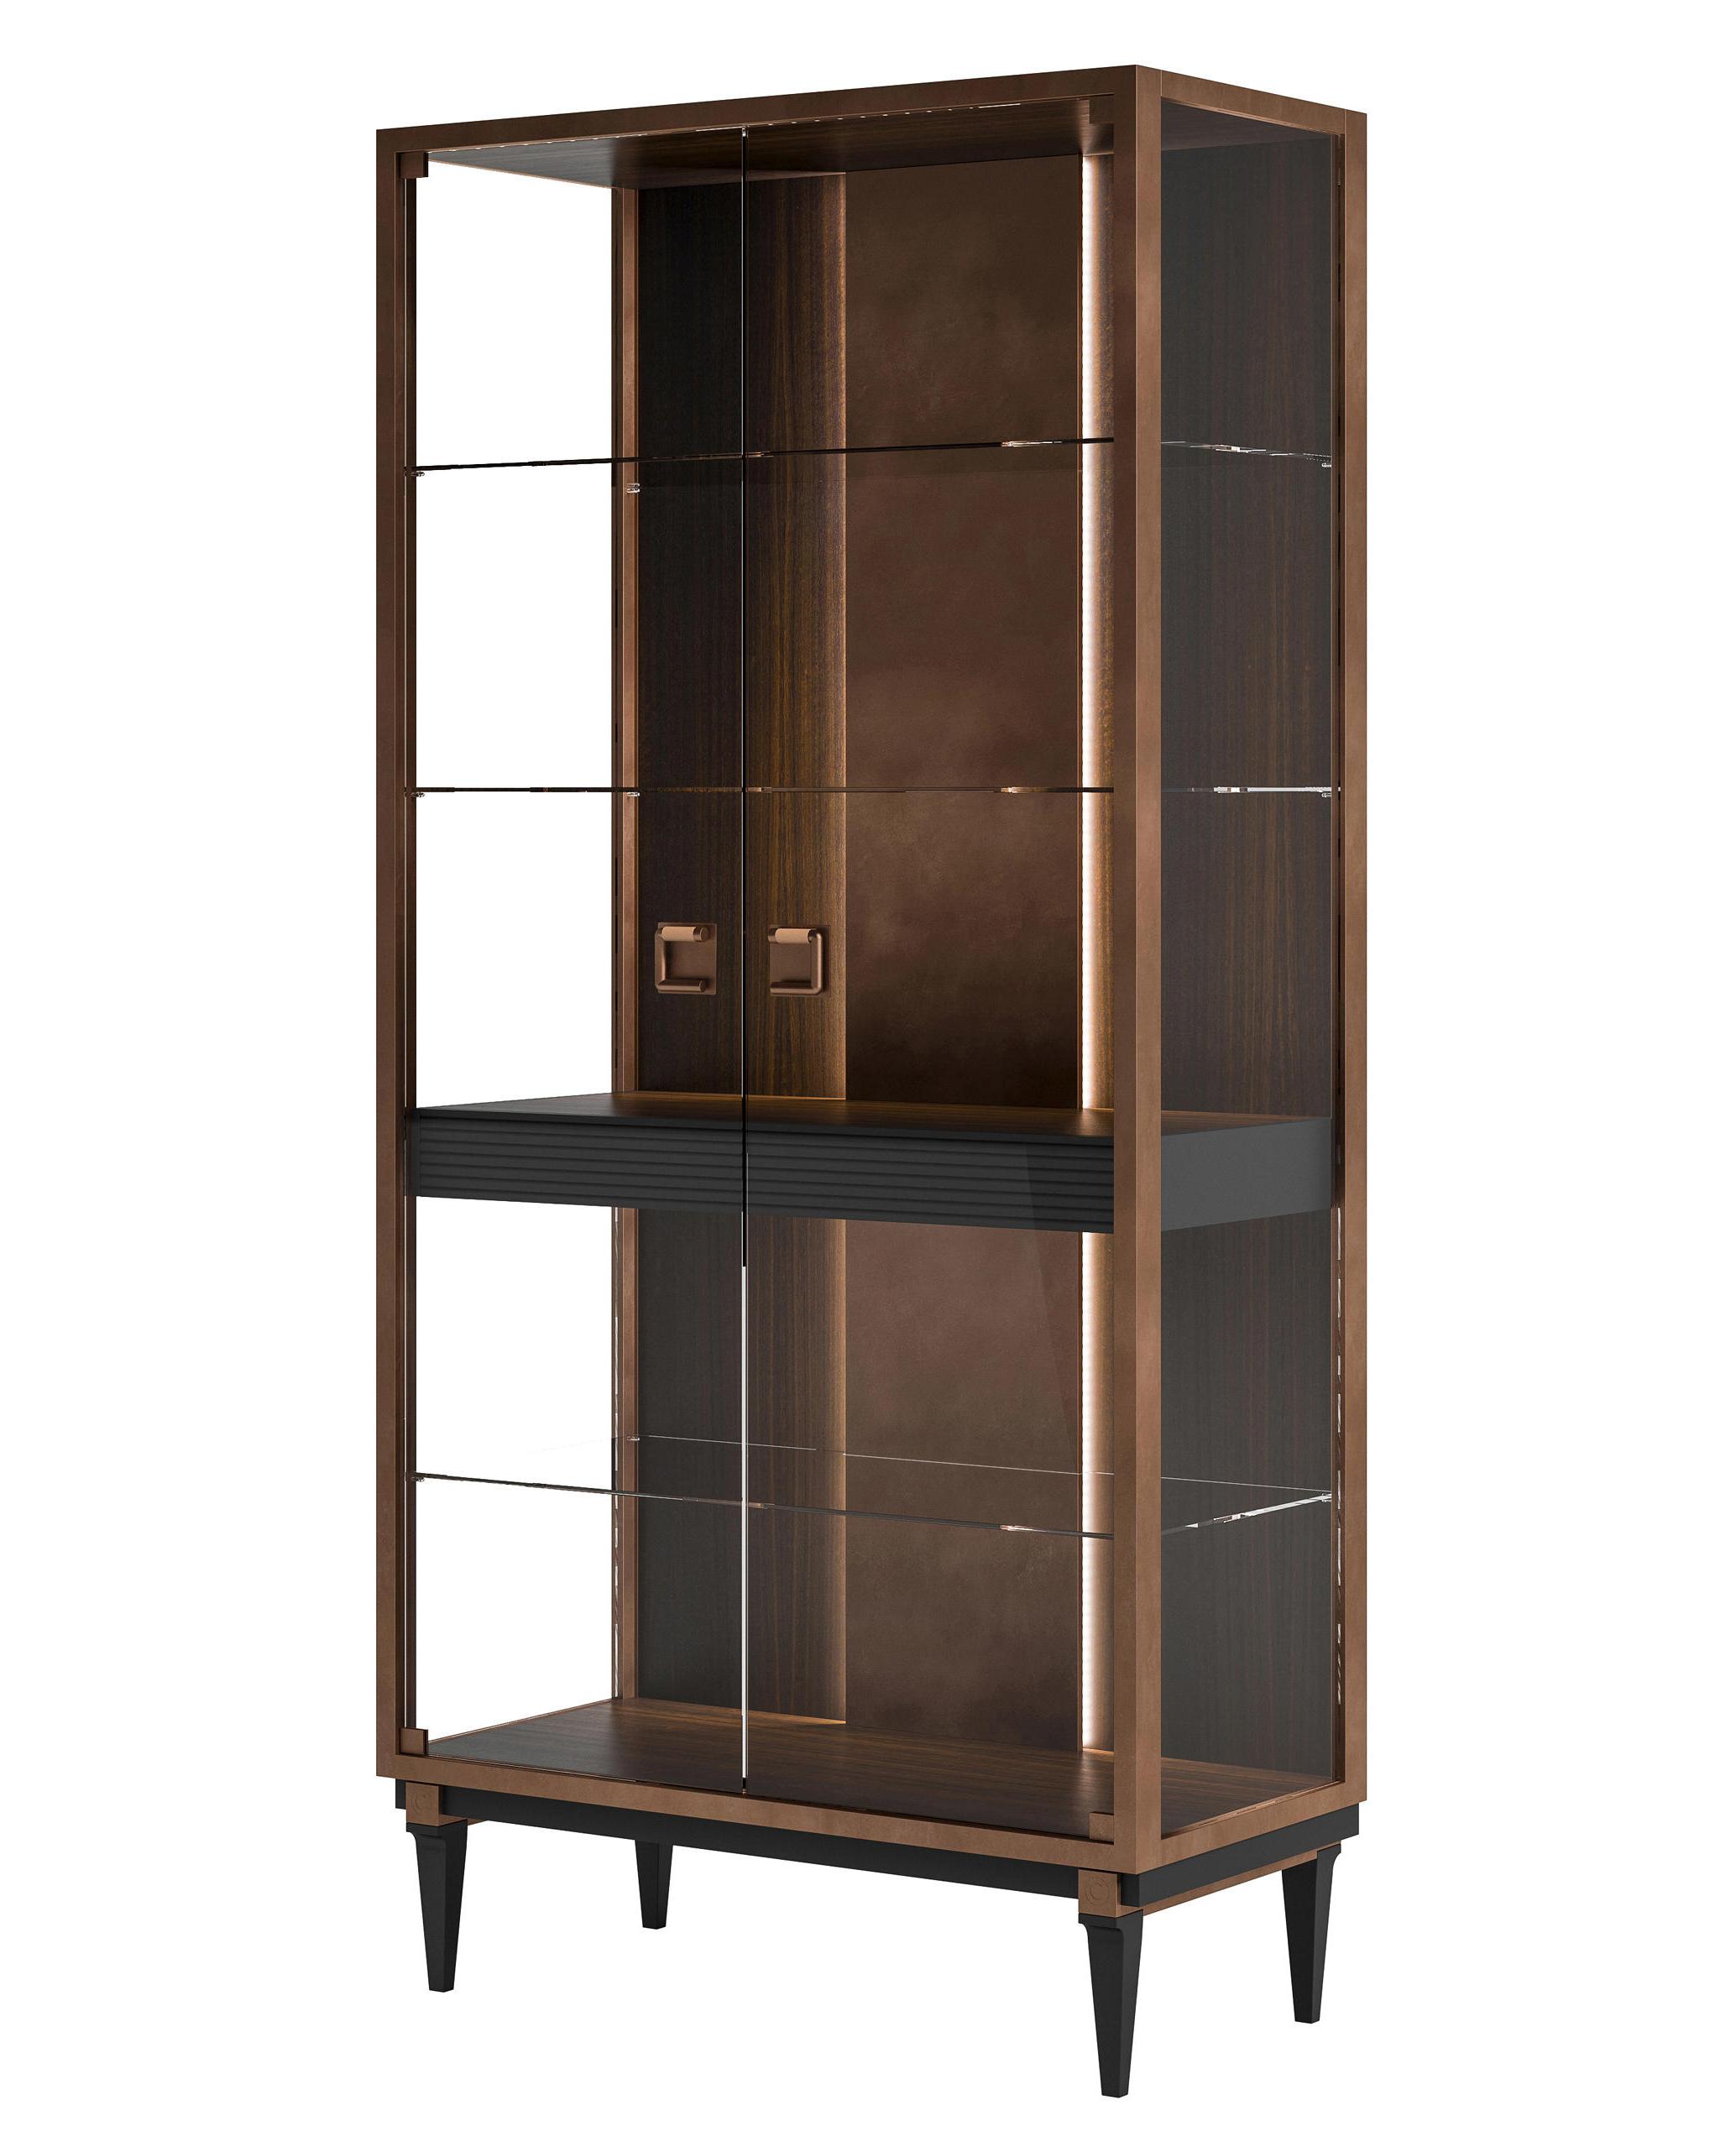 Exquisite Showcase Luxury Cabinet